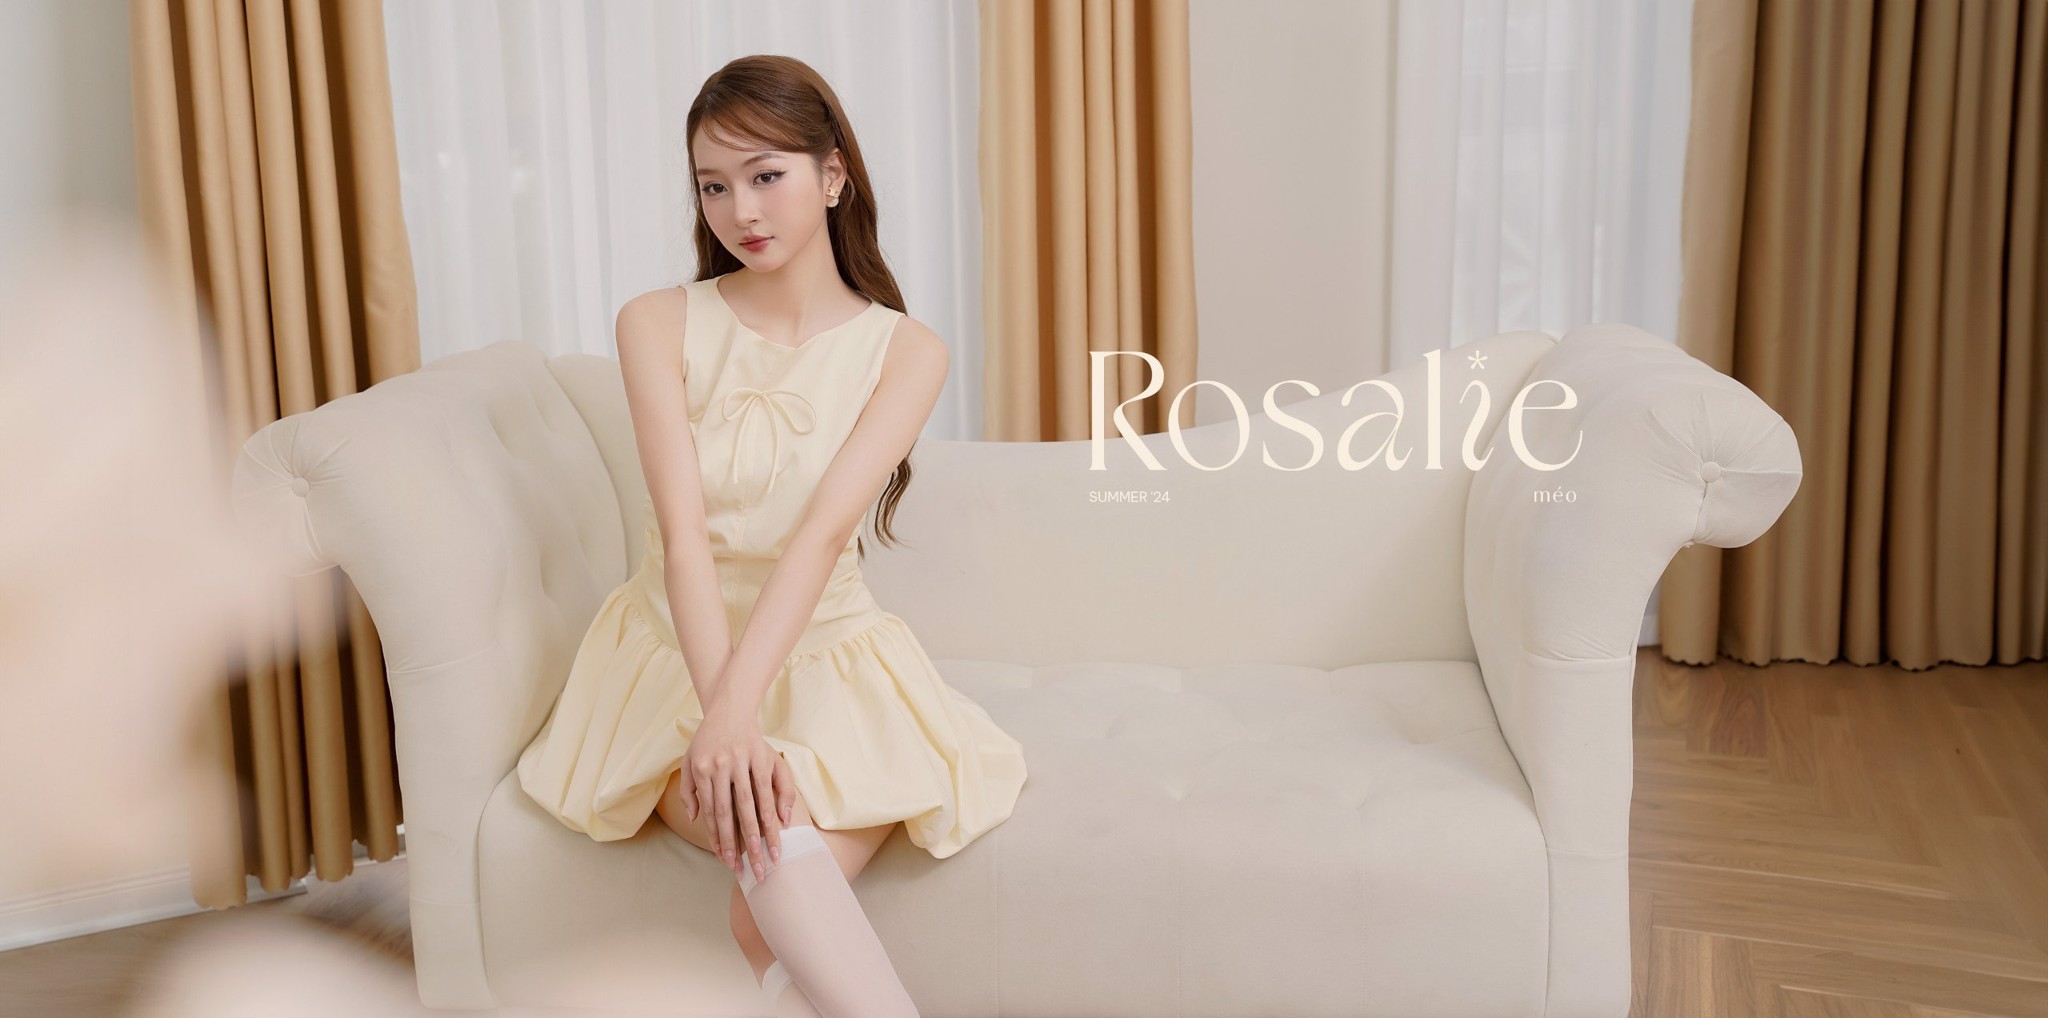 BST Rosalie